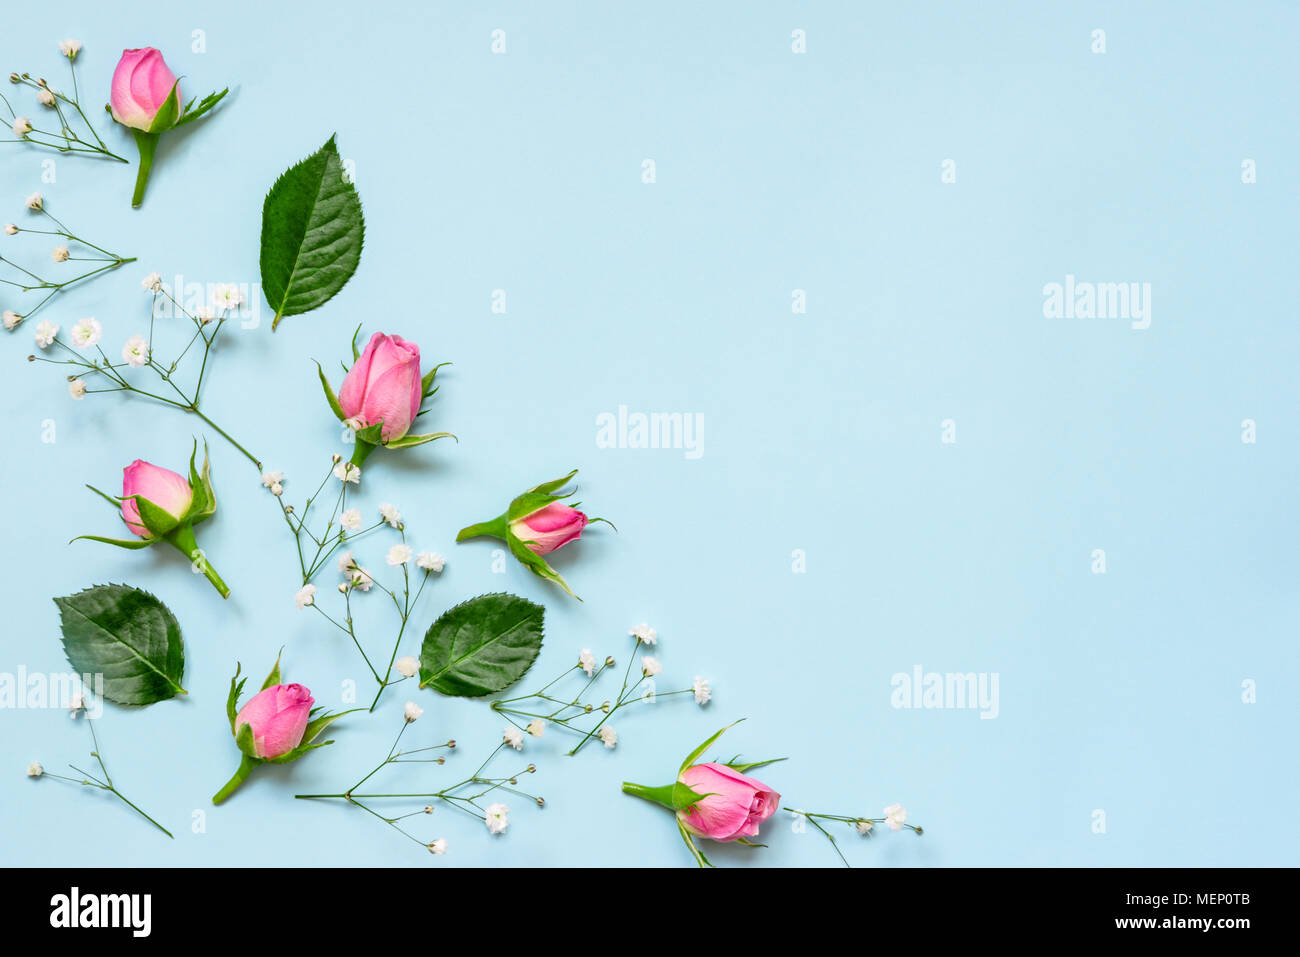 Vue de dessus de roses roses et de feuilles vertes sur fond bleu. Abstract floral background. Copier l'espace. Banque D'Images